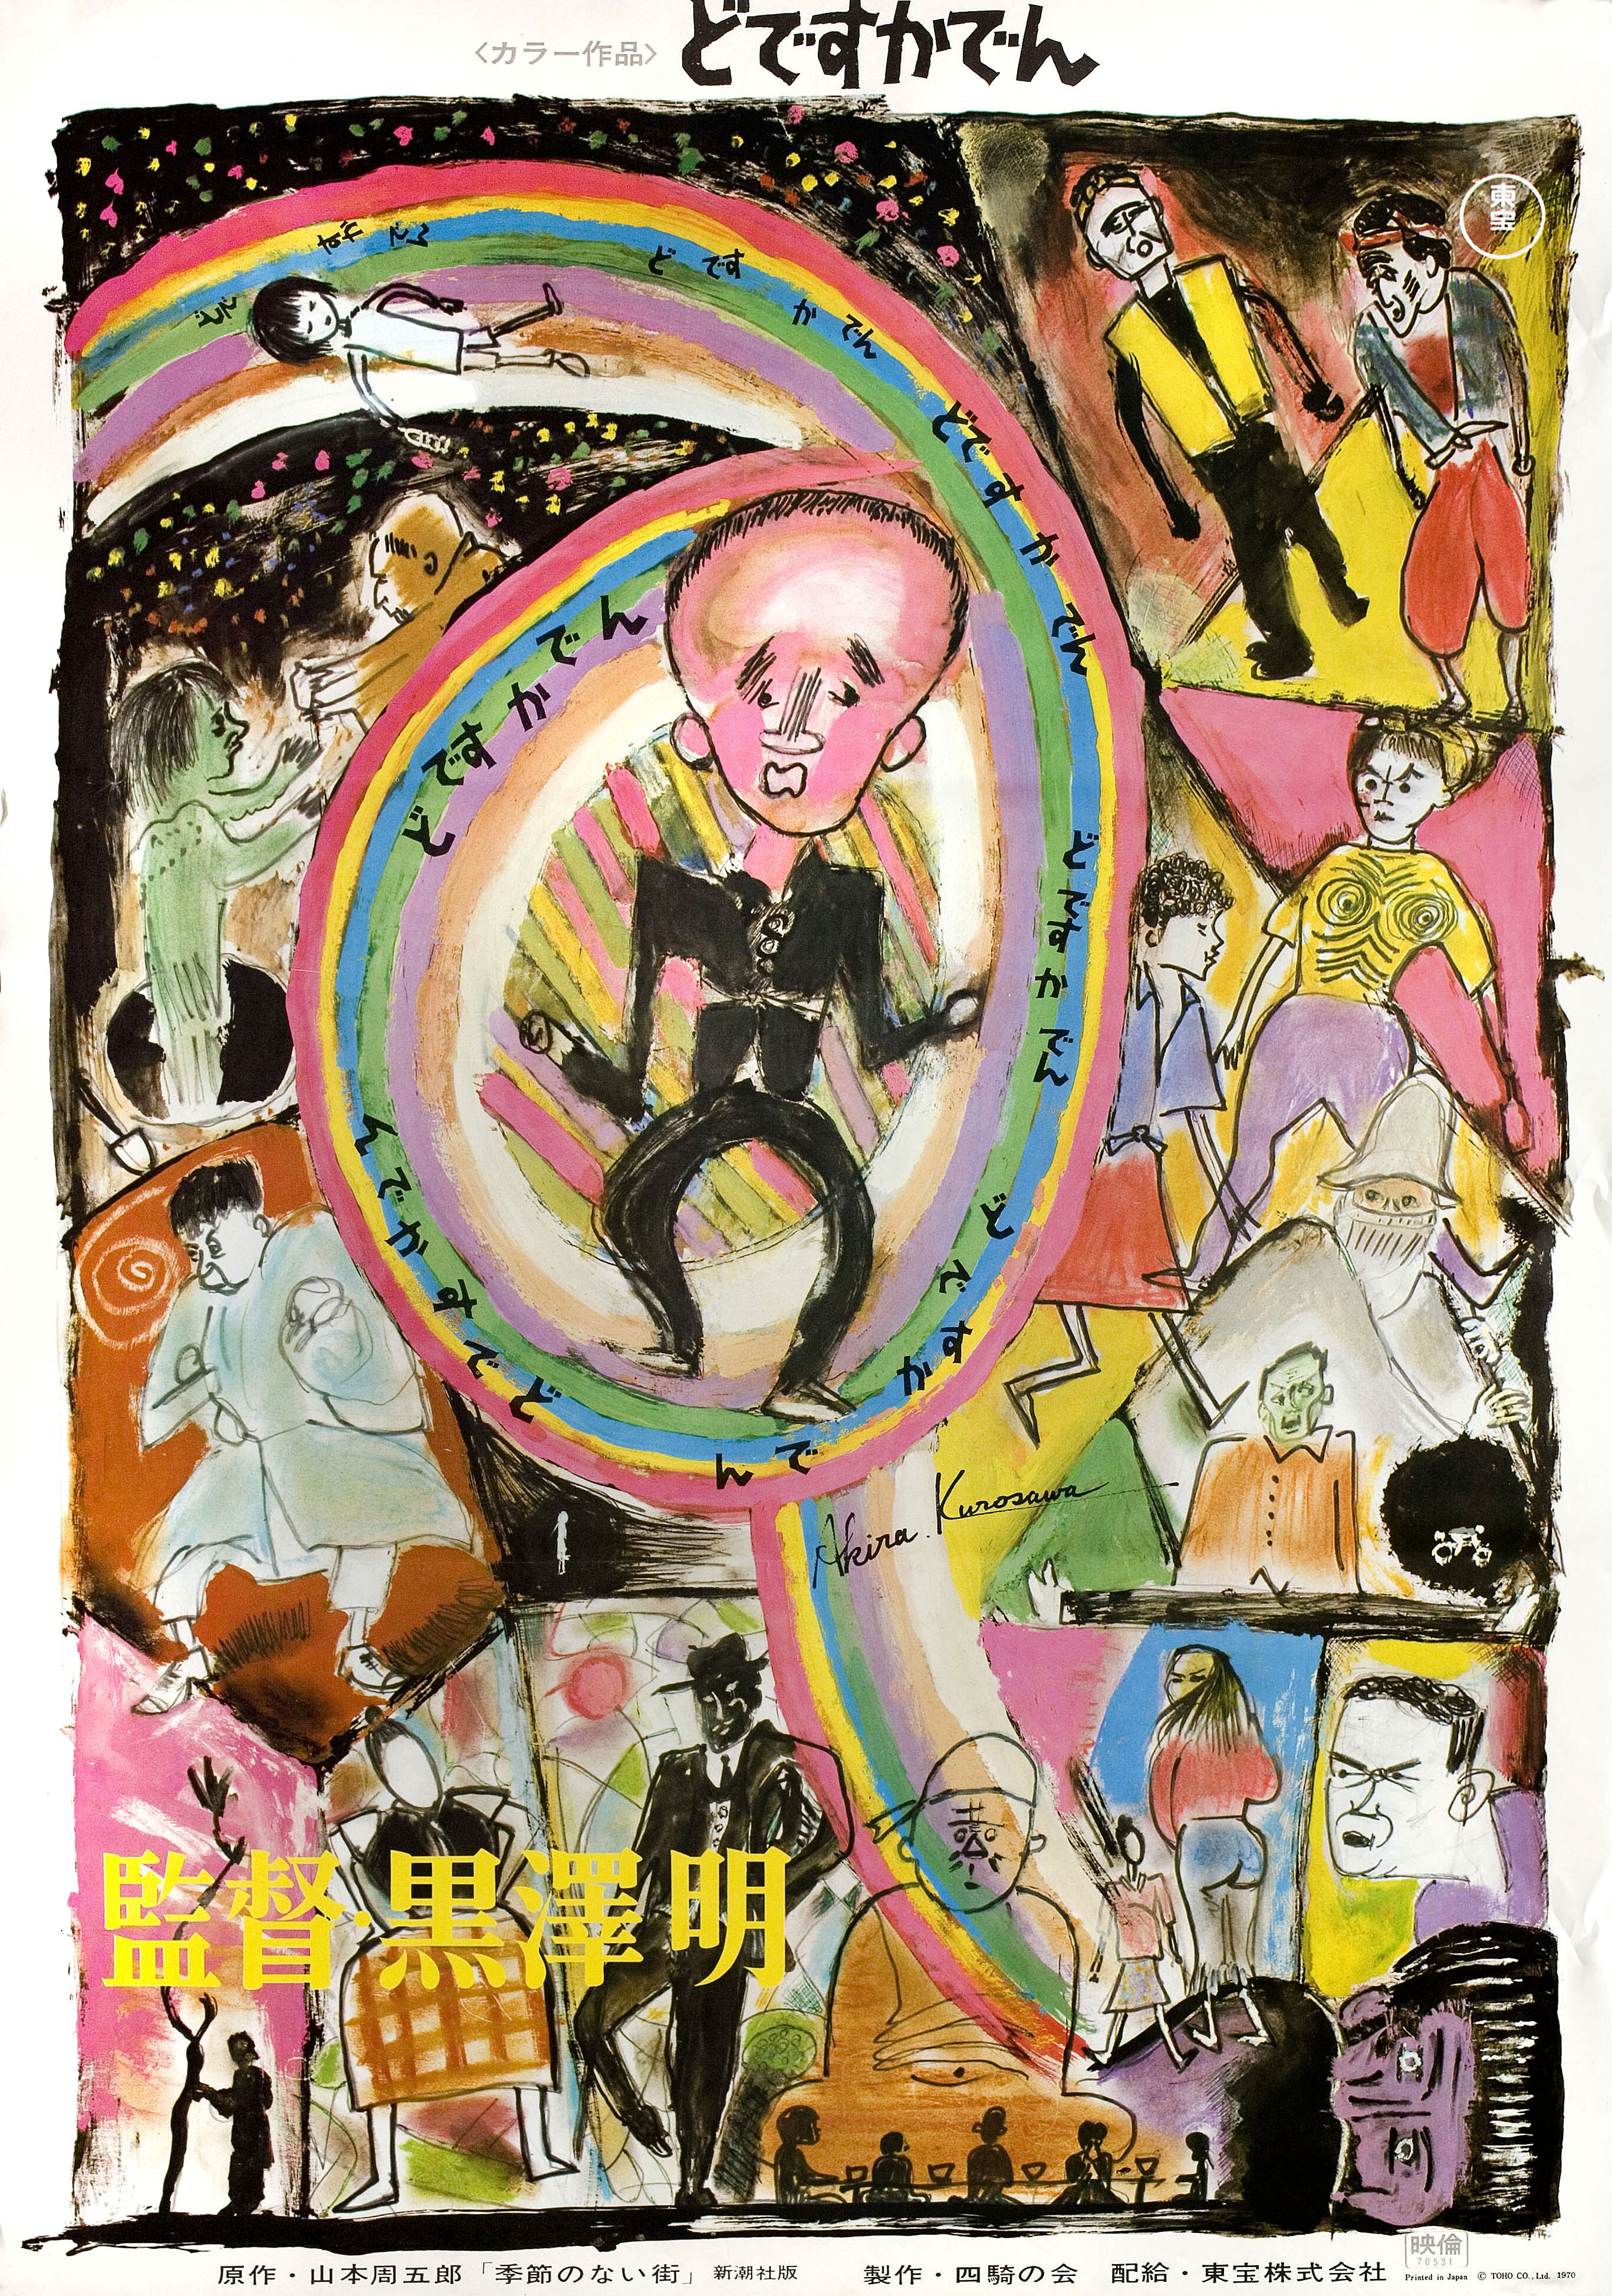 Под стук трамвайных колёс (Dodeska-den, 1970), режиссёр Акира Куросава, художественный постер к фильму (Япония, 1970 год), автор Акира Куросава_1